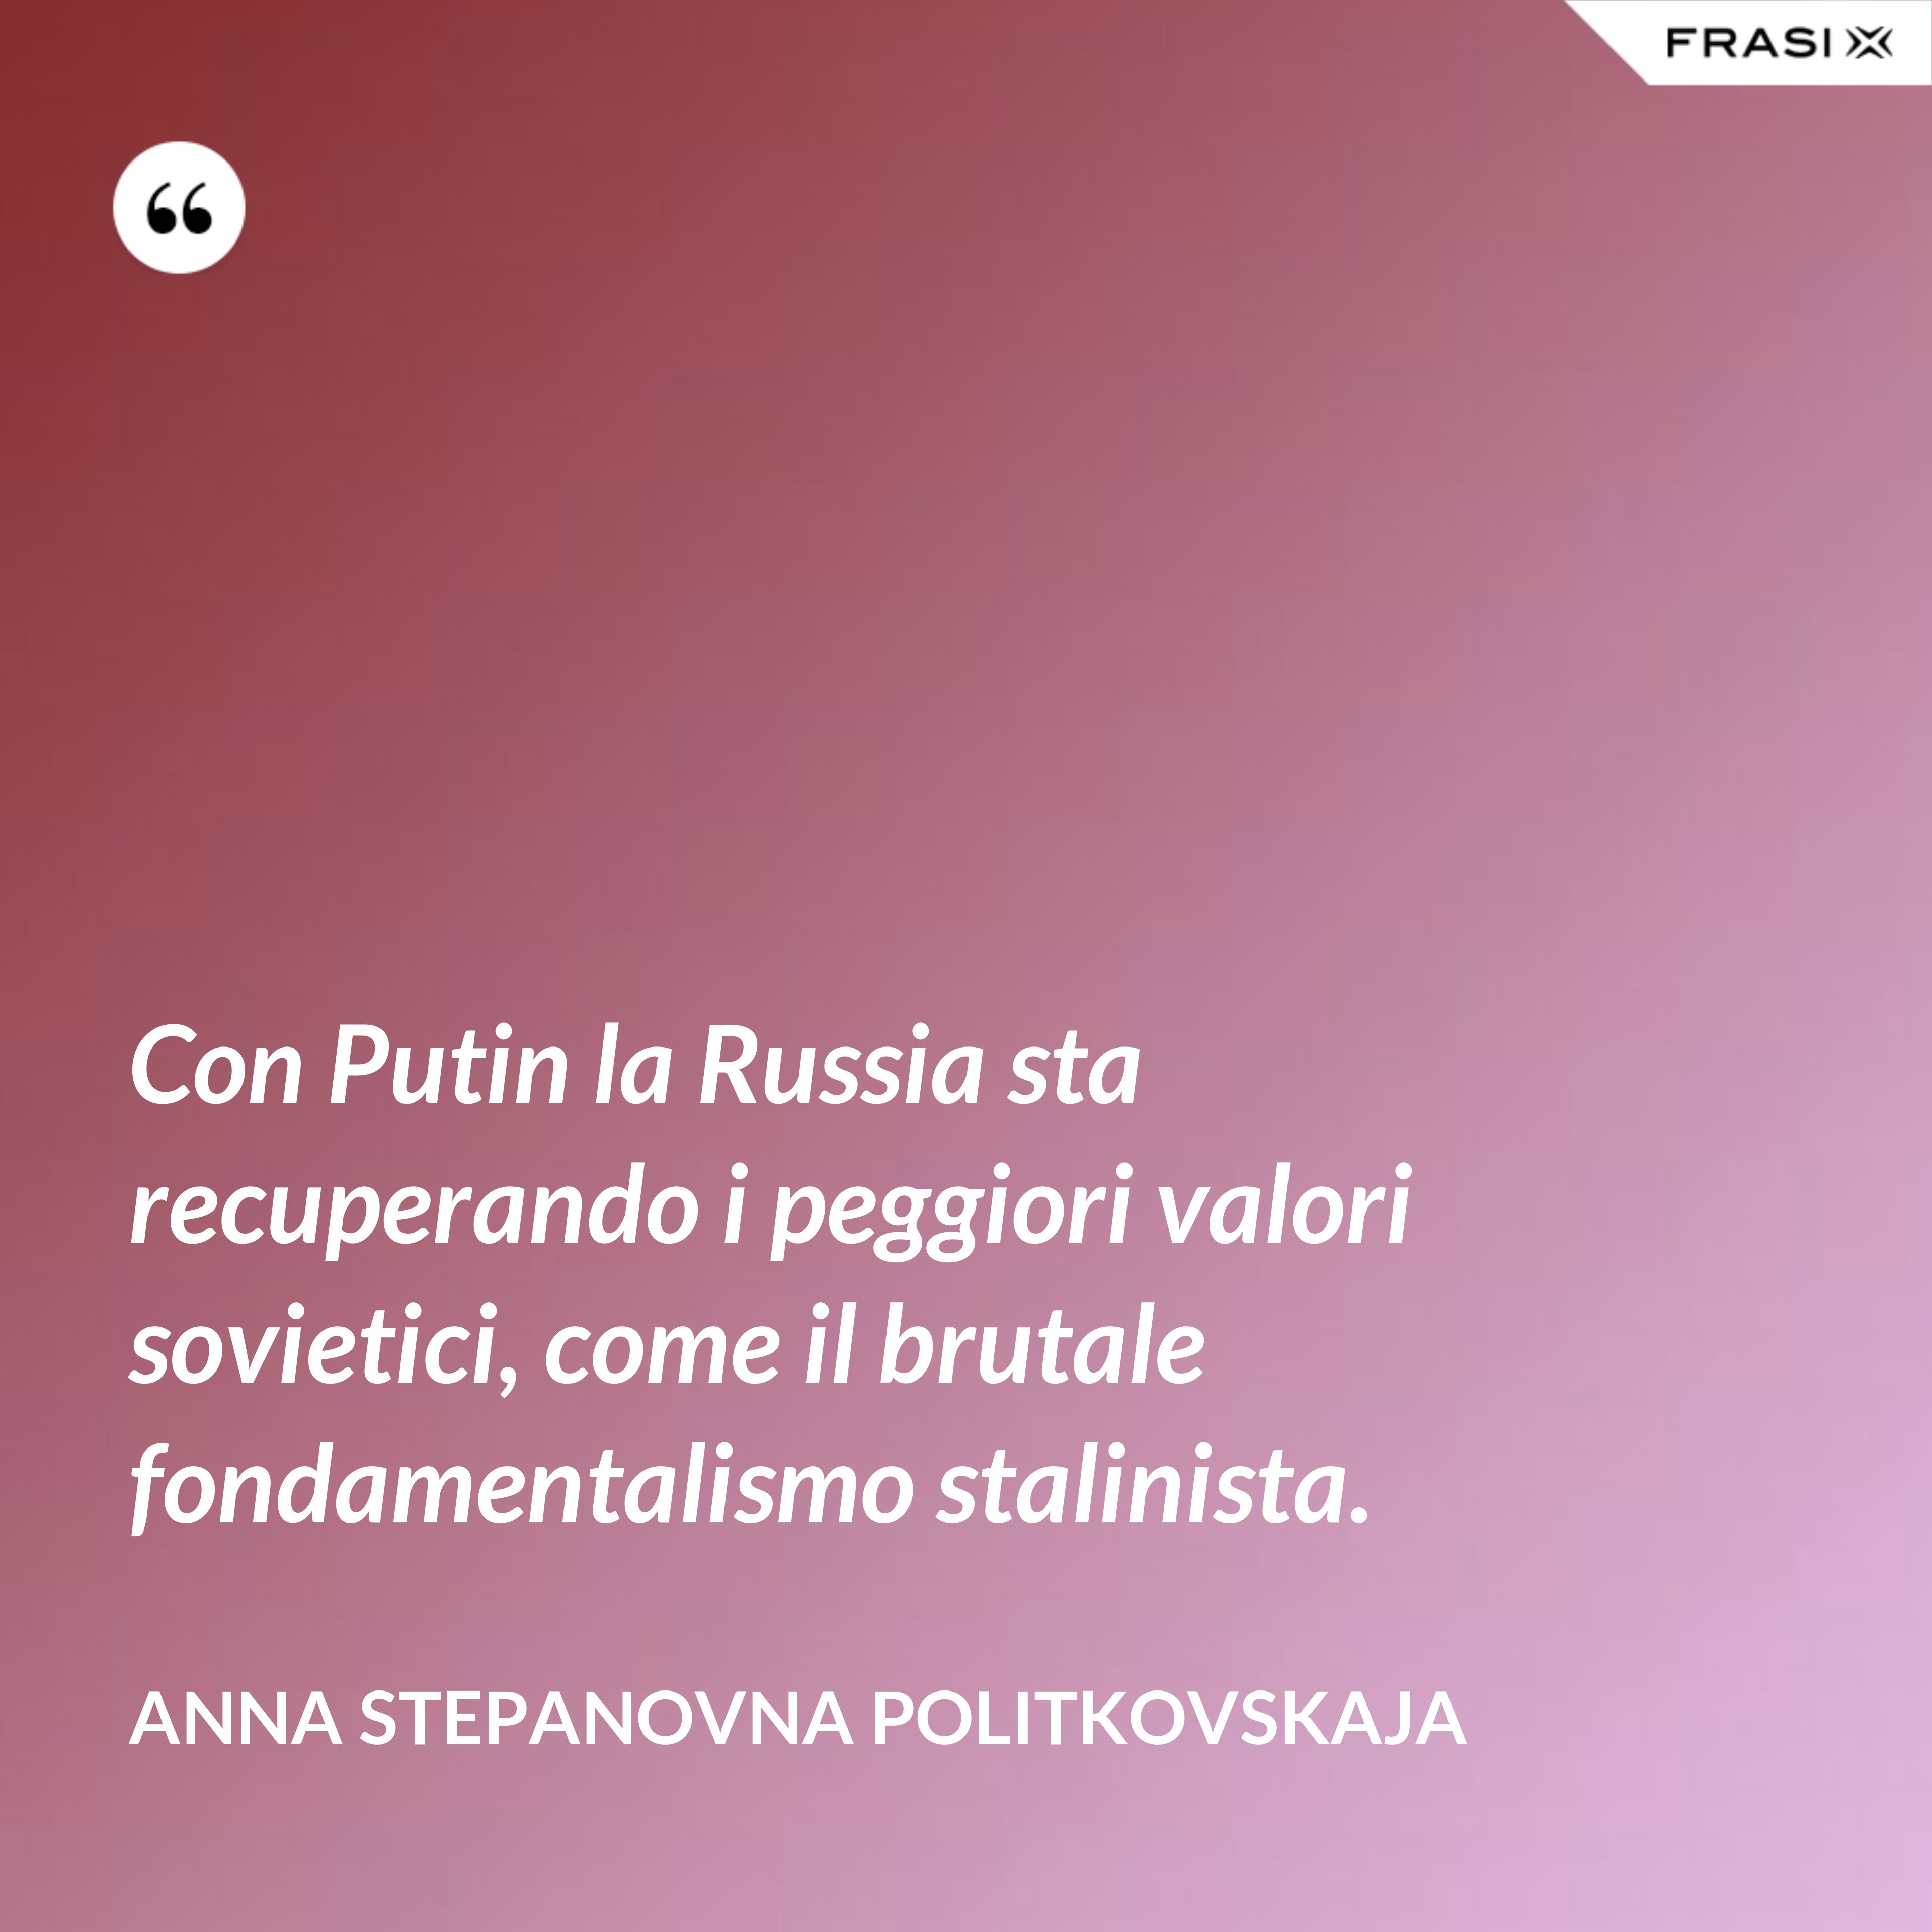 Con Putin la Russia sta recuperando i peggiori valori sovietici, come il brutale fondamentalismo stalinista. - Anna Stepanovna Politkovskaja